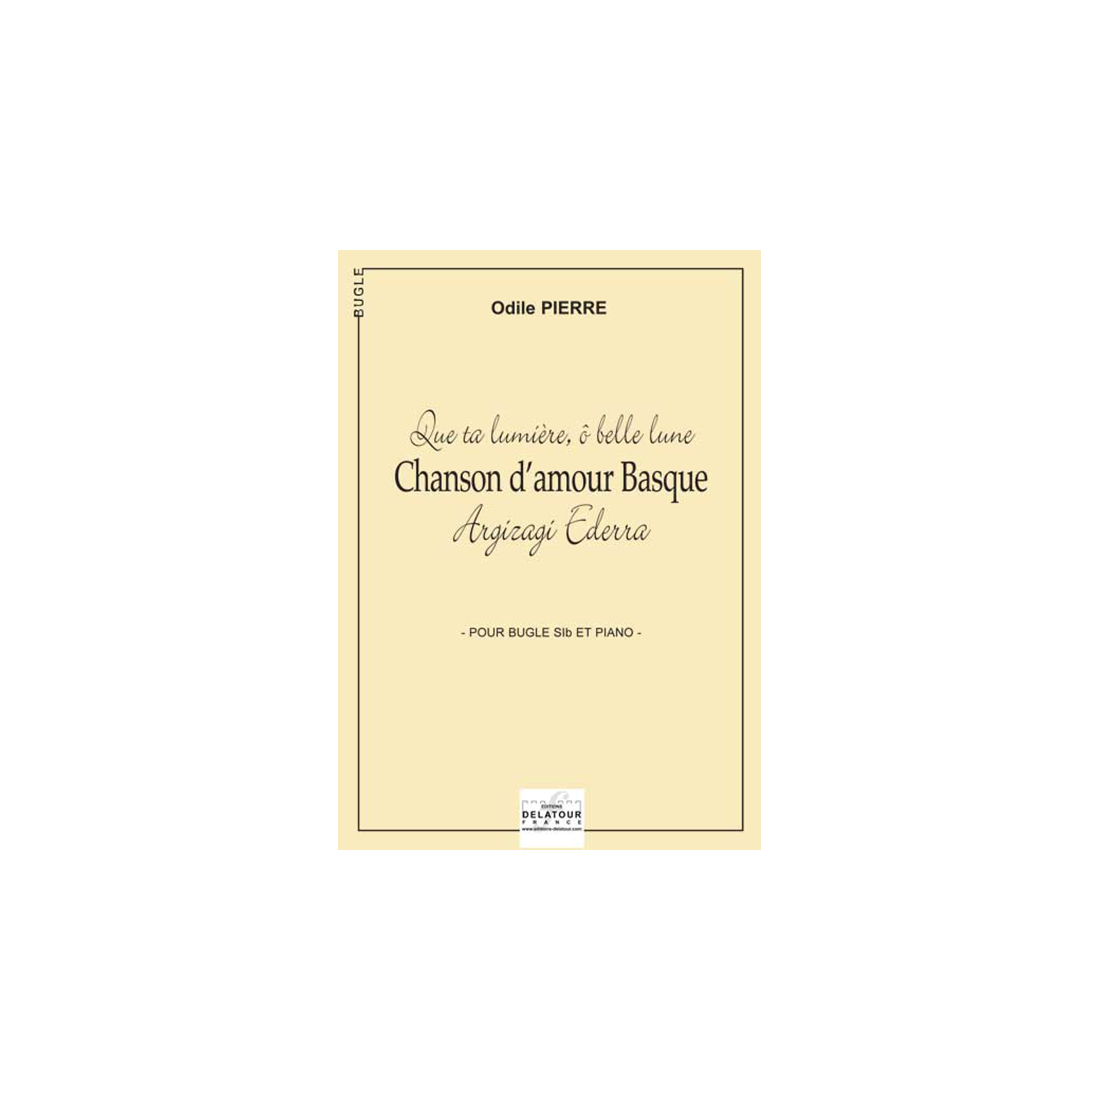 Chanson d'amour Basque pour bugle et piano